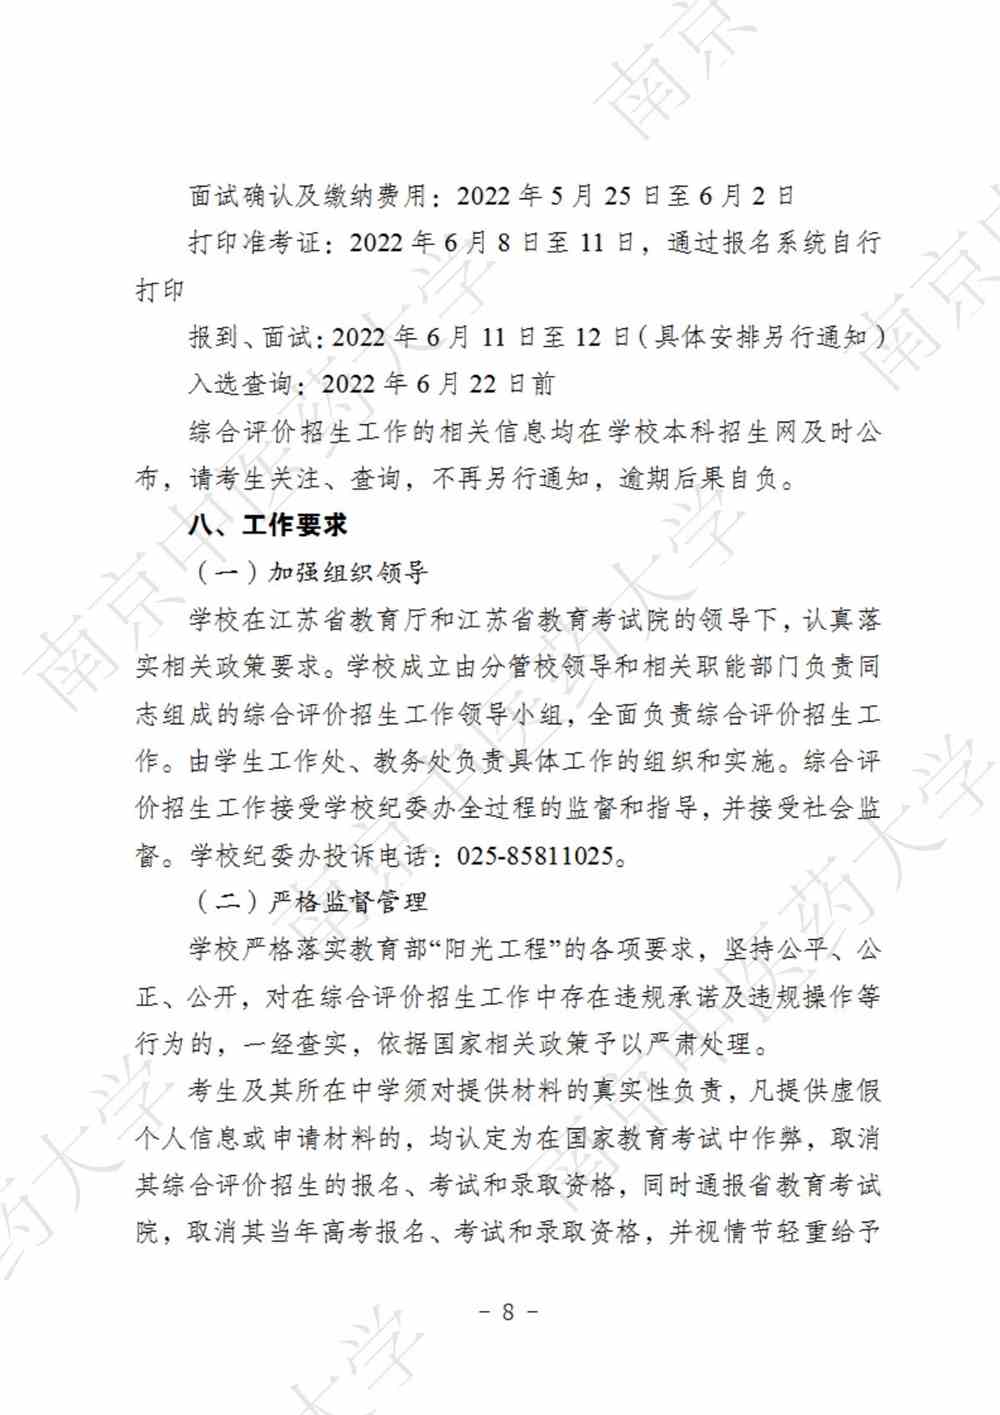 南京中医药大学2022年综合评价招生简章